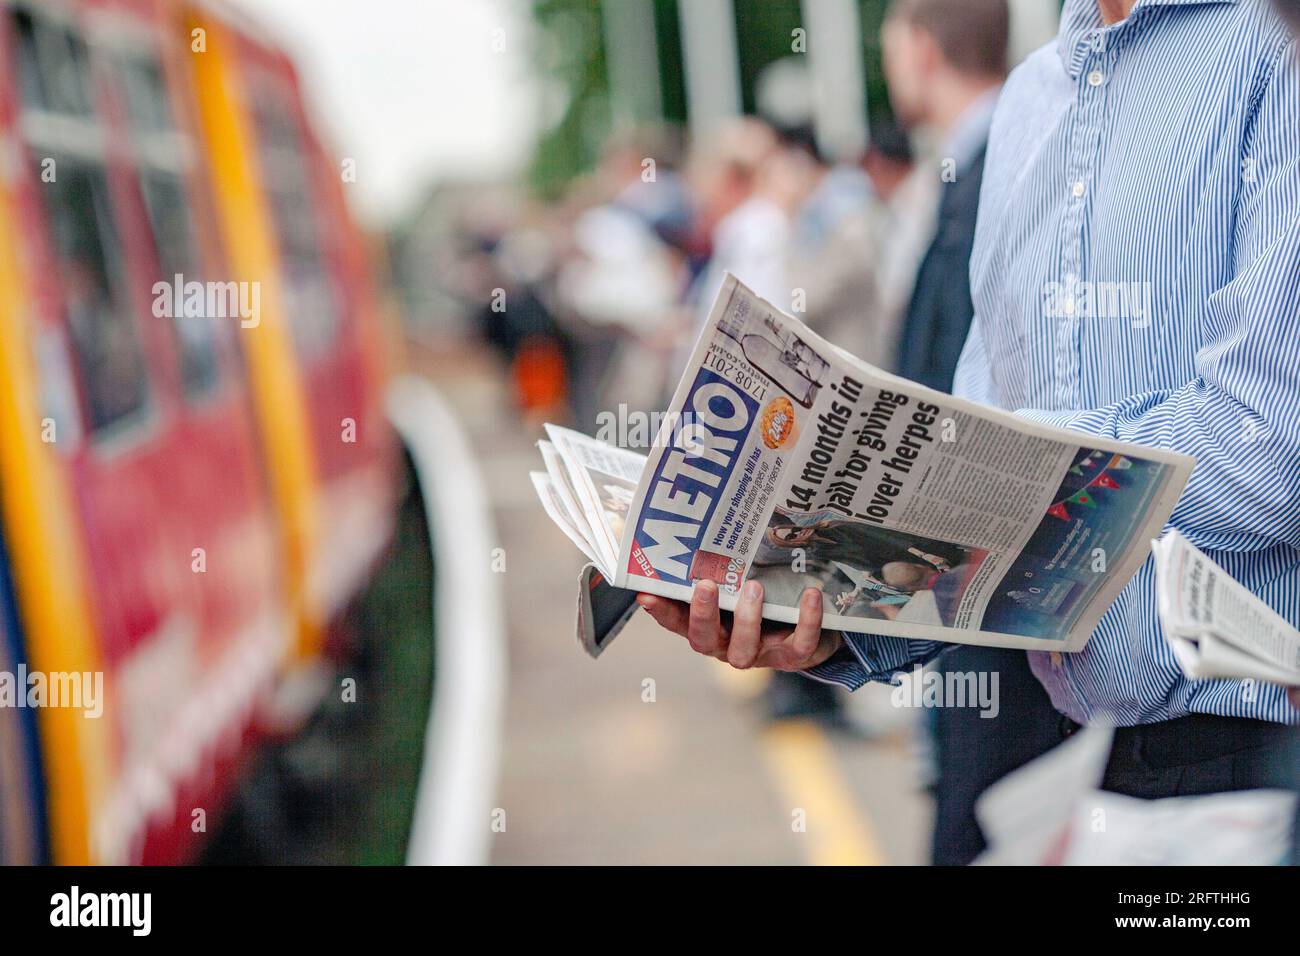 Gros plan d'un voyageur lisant le journal du métro sur le quai attendant le train à Norbition Station, Surrey, Angleterre. Banque D'Images